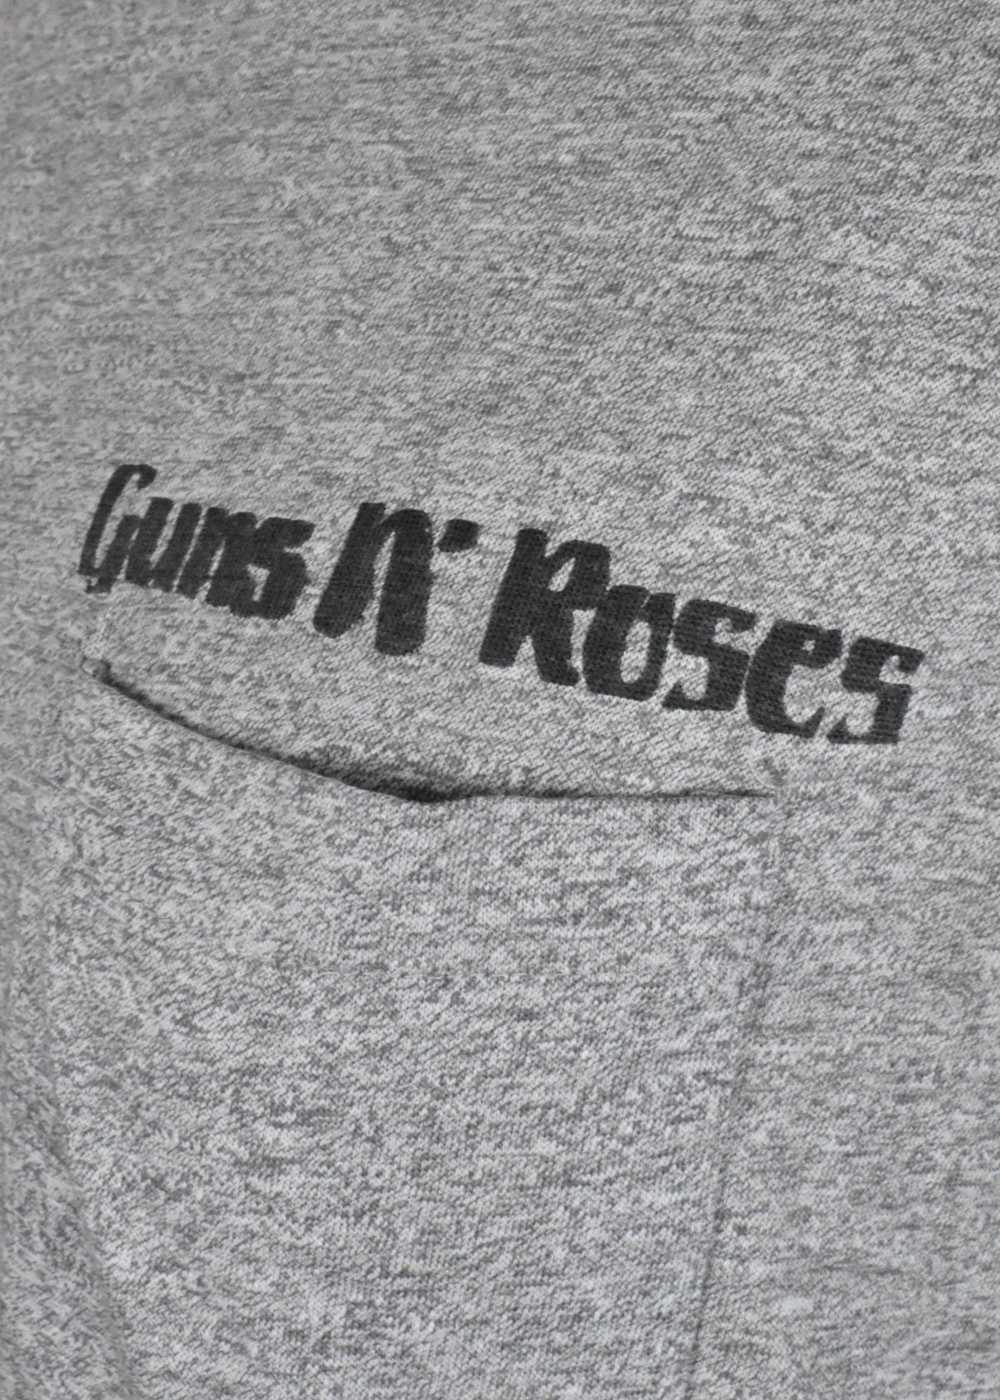 Original 1985 Guns 'n Roses Muscle Shirt - image 6